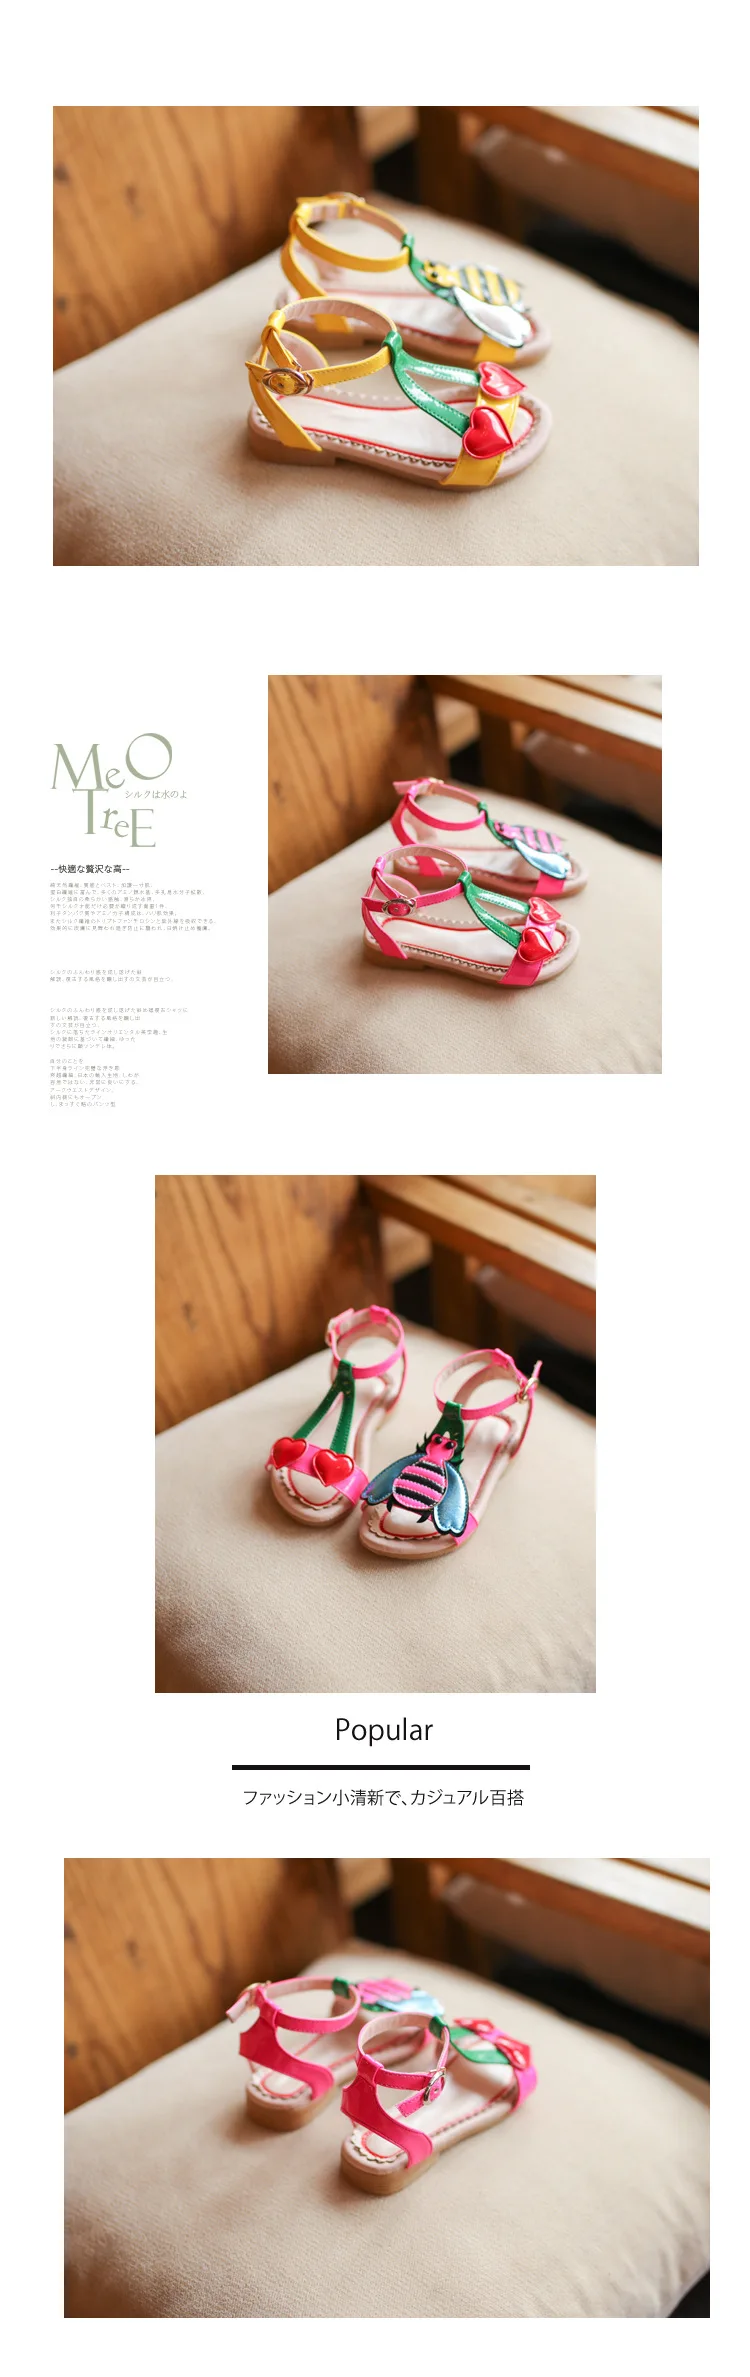 Летние сандалии для девочек; детская пляжная обувь; детская обувь; обувь для малышей с рисунком вишни и пчелы; лакированная кожа; для детей 1-8 лет